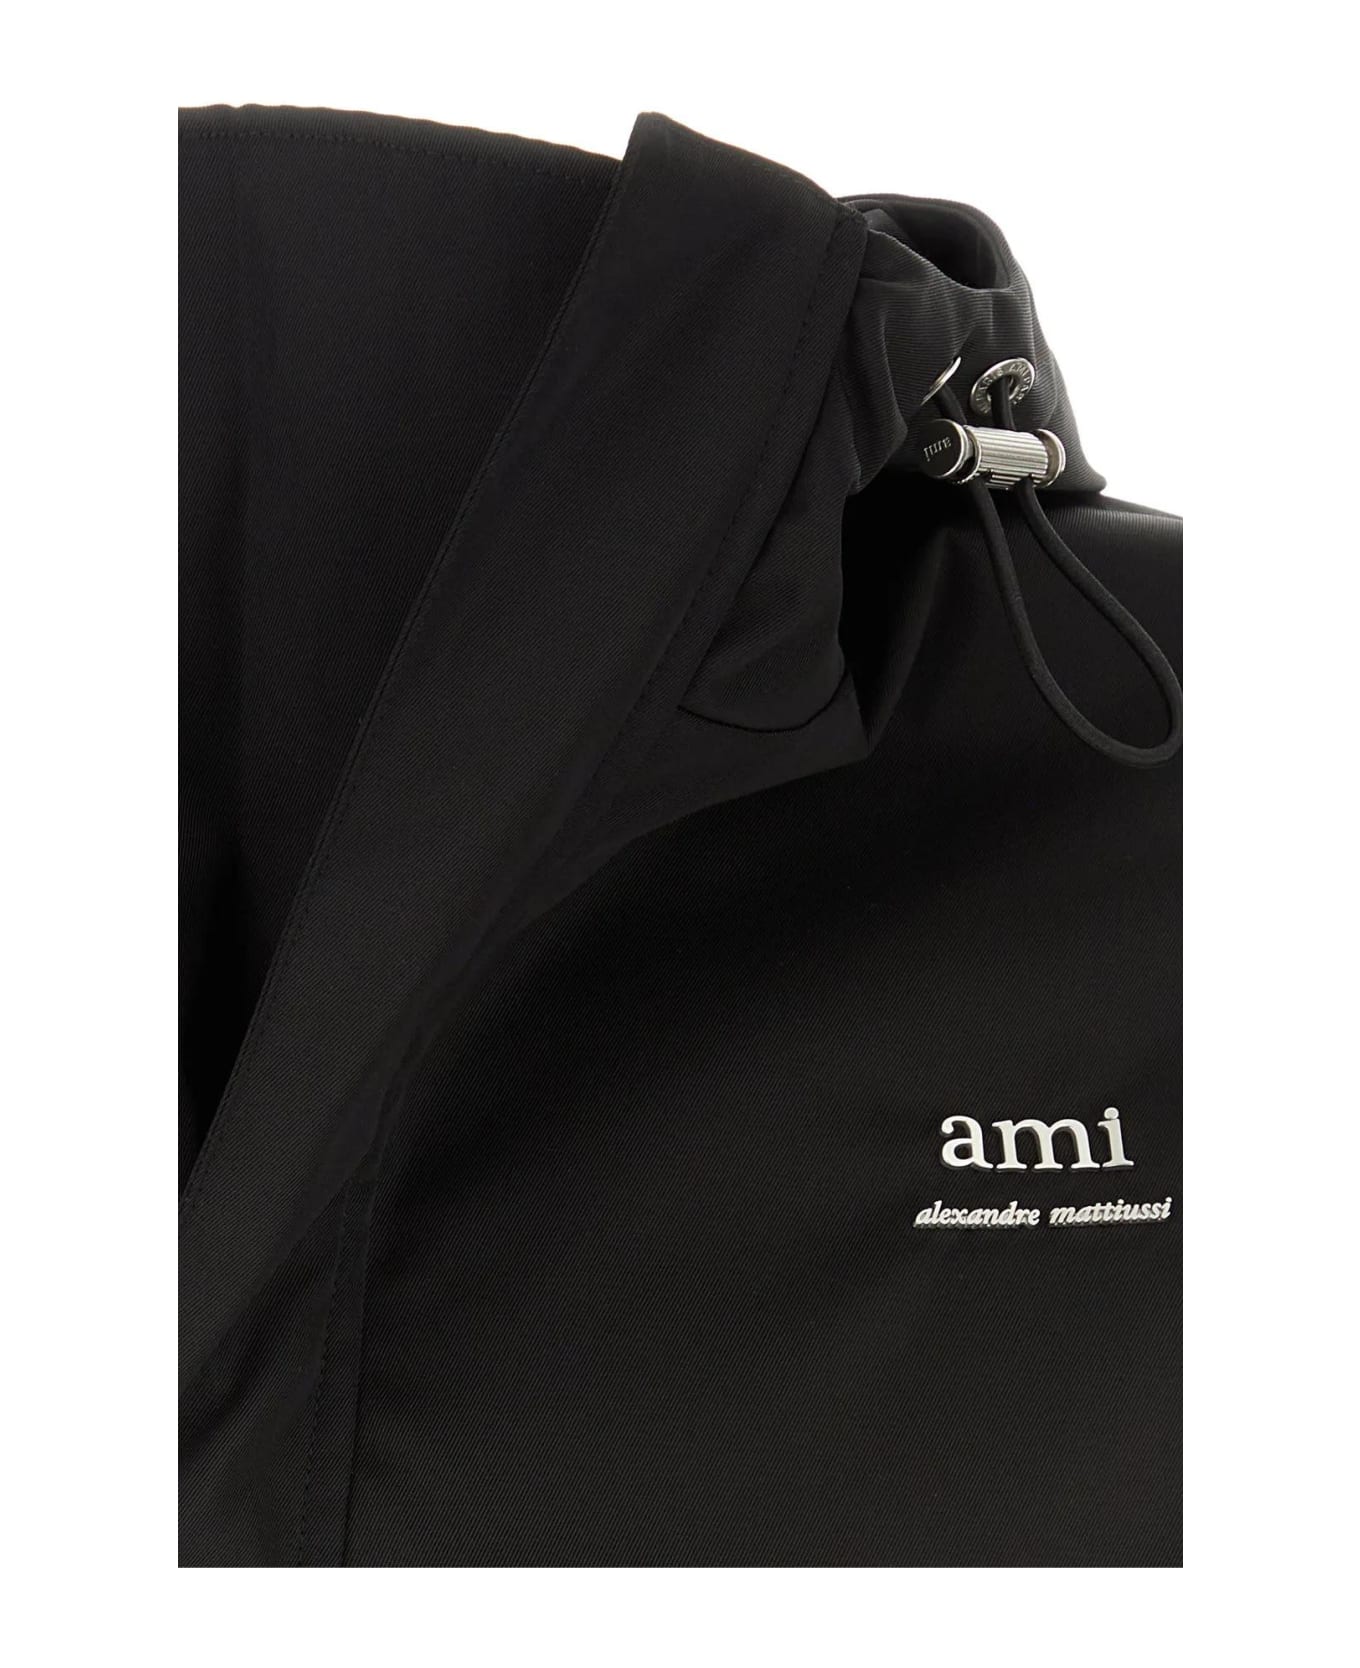 Ami Alexandre Mattiussi Black Nylon Blend Jacket - BLACK ジャケット